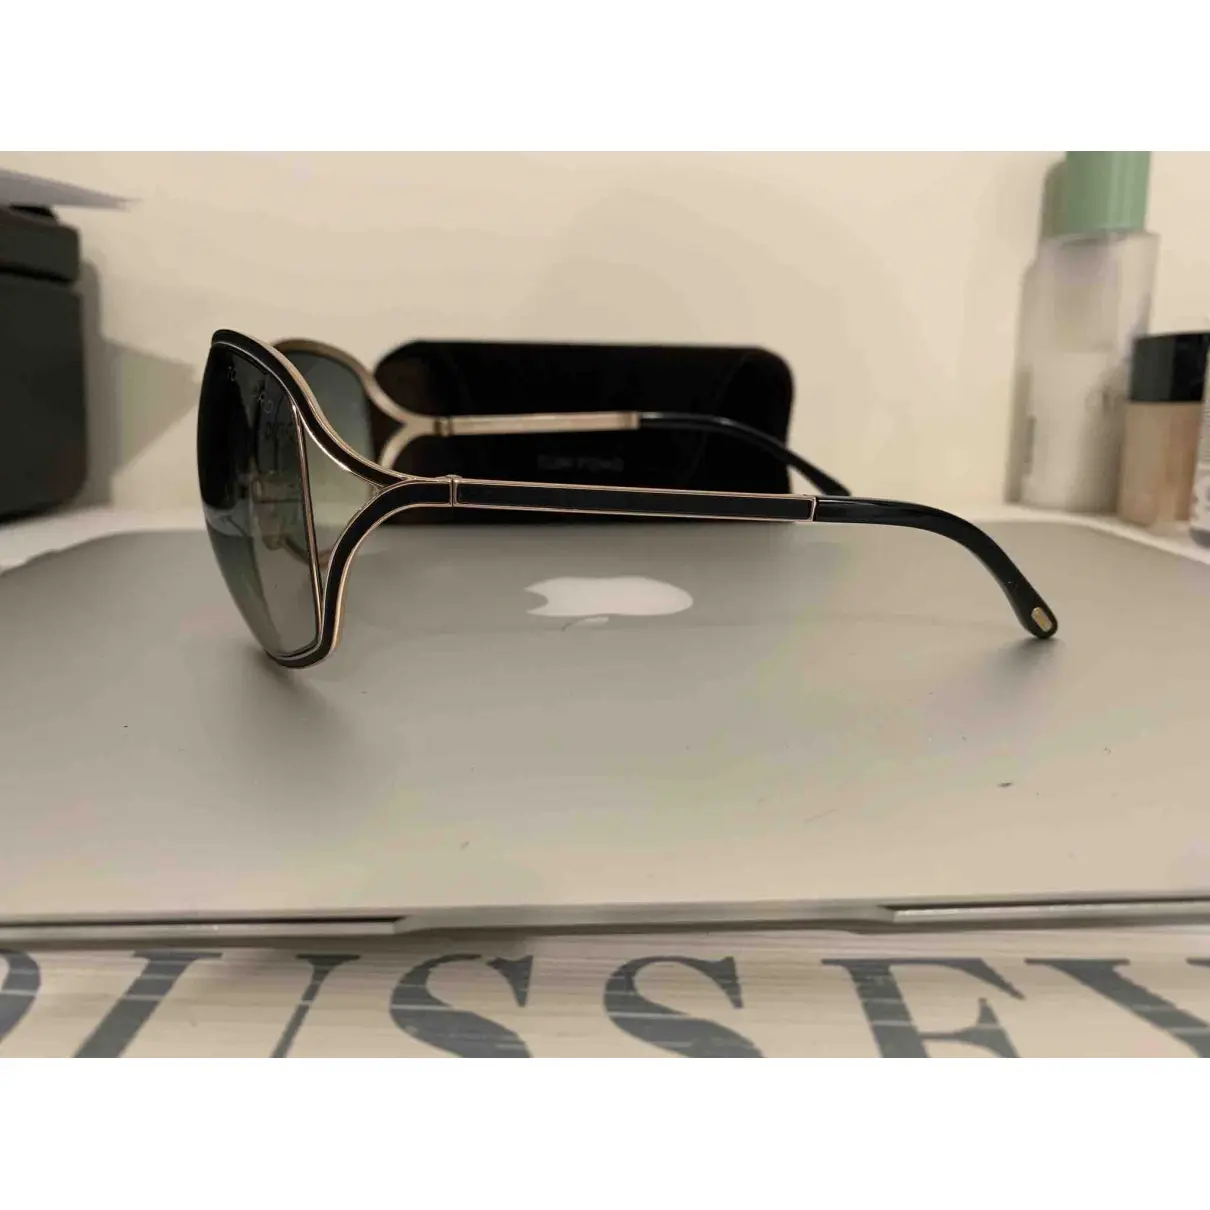 Buy Tom Ford Oversized sunglasses online